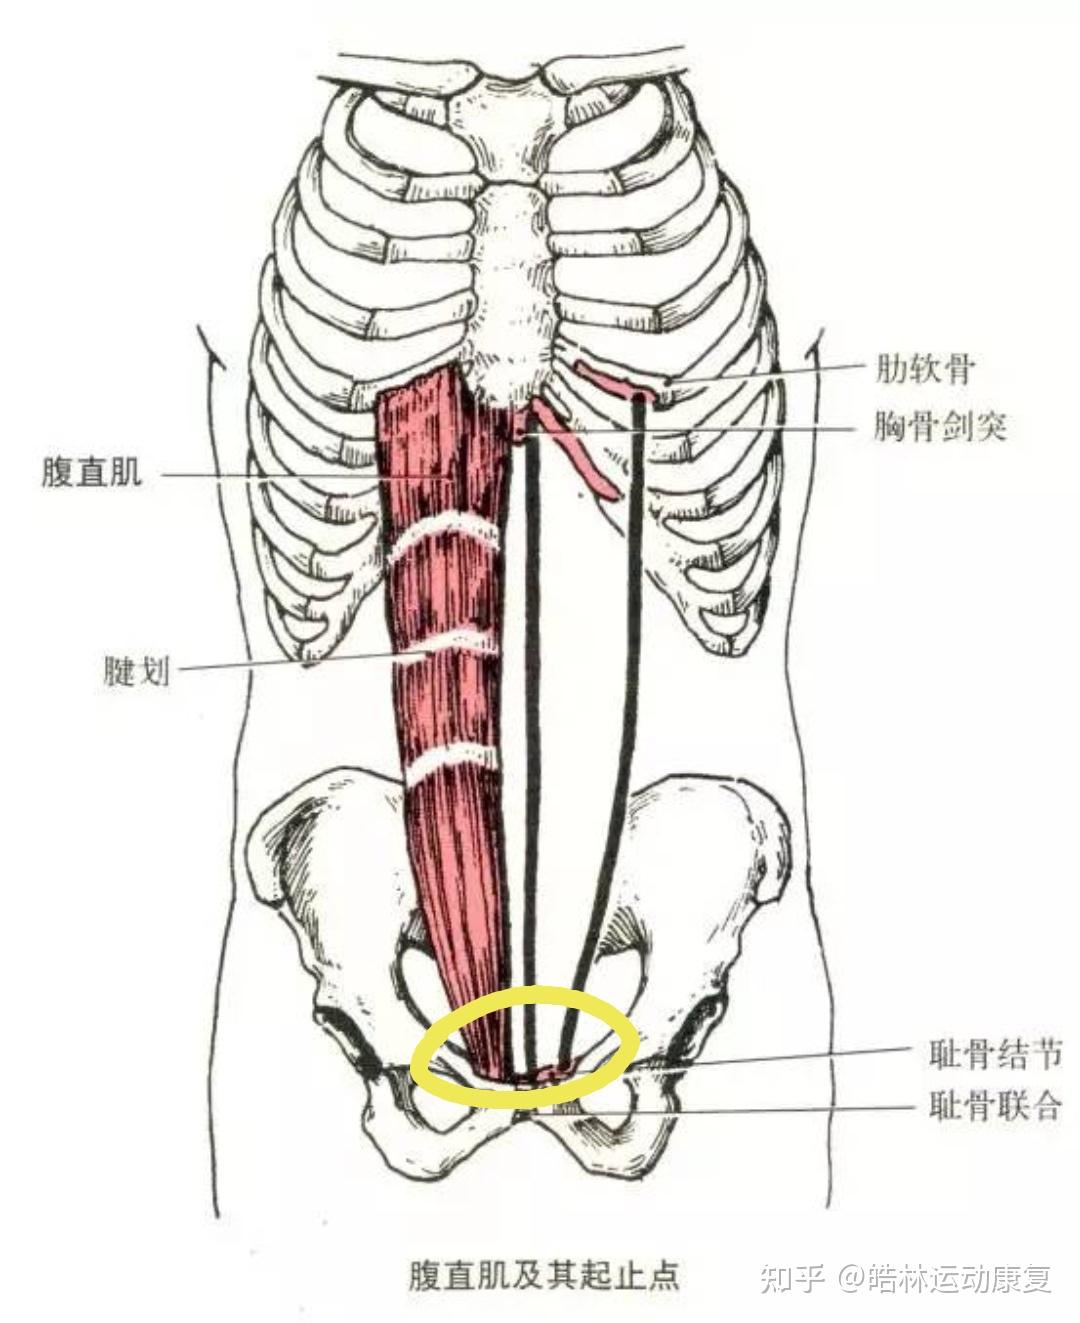 用双手指腹按压肋骨下缘腹直肌上端附着处,按压3-5分钟,以局部疼痛